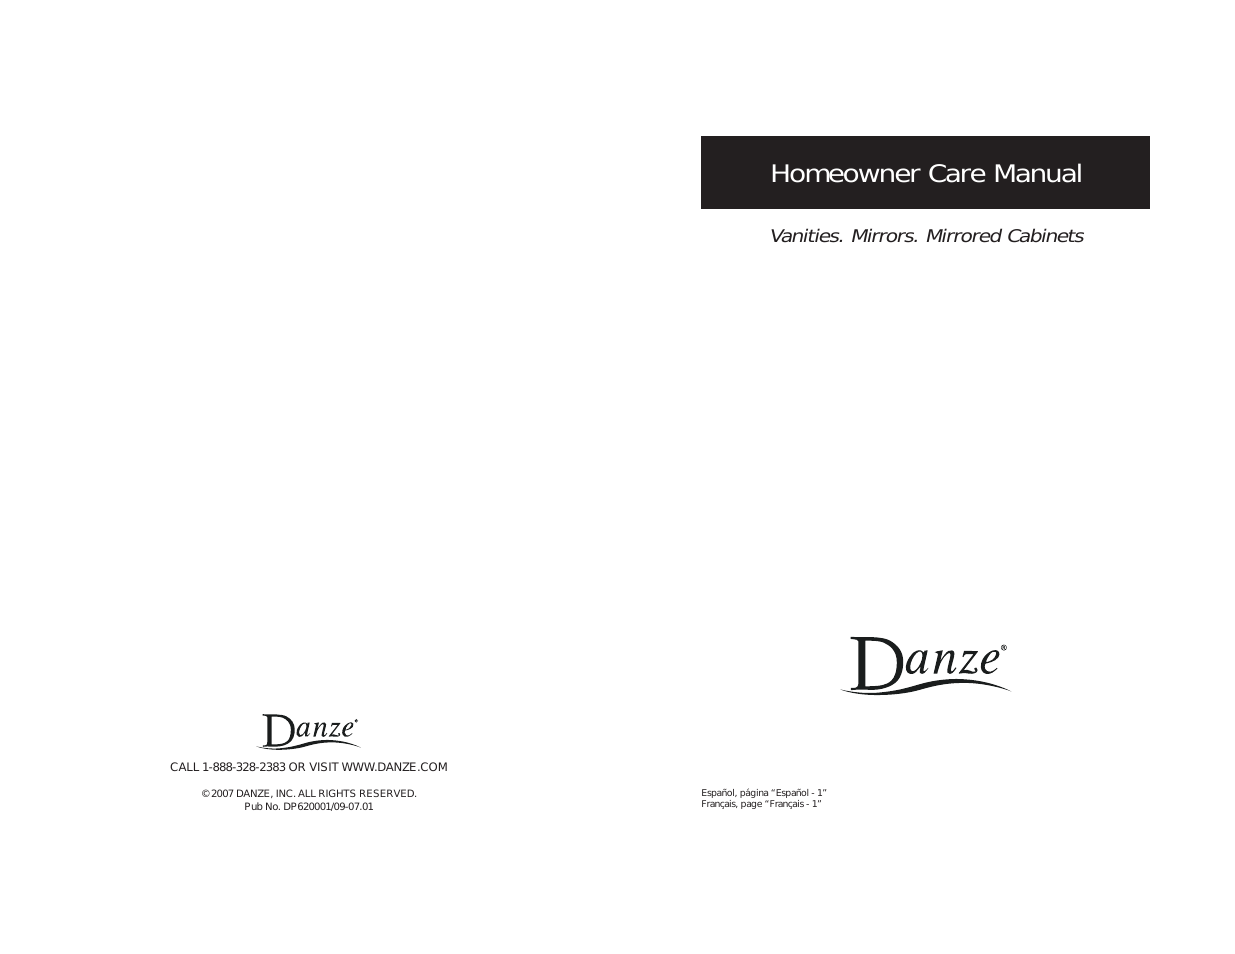 DF012124 - Homeowner Manual